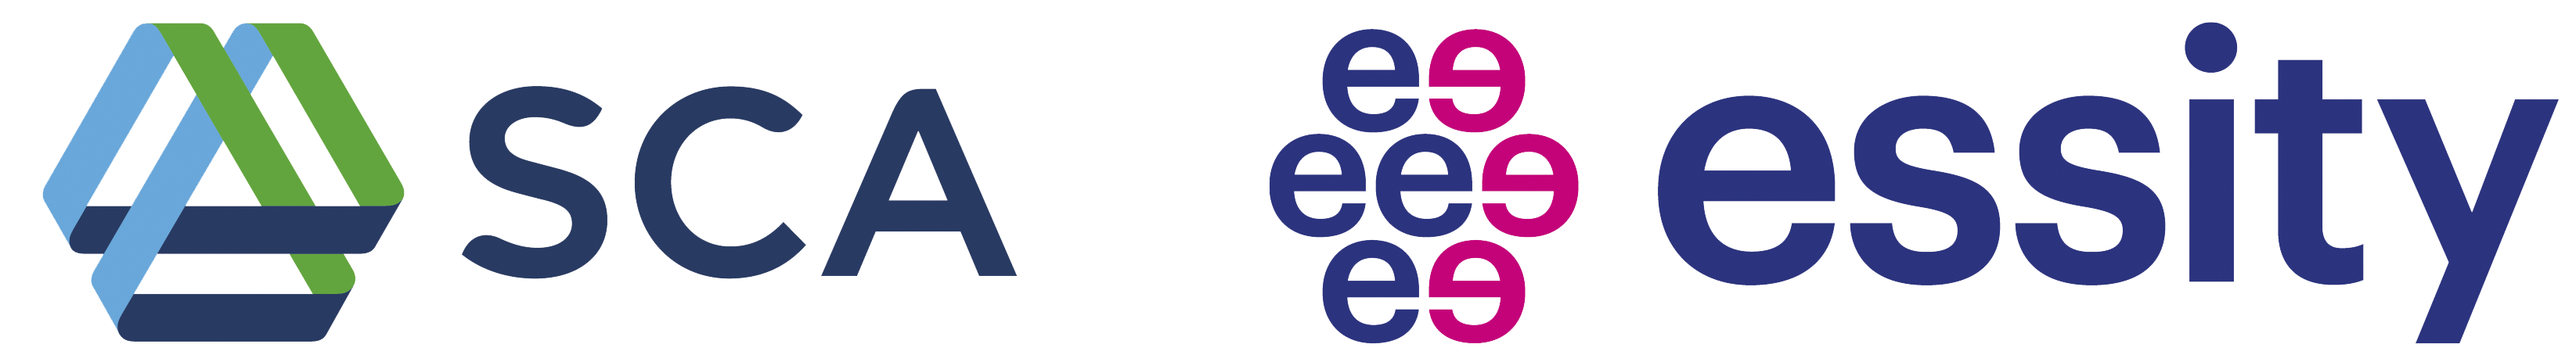 ЭССИТИ. Ессити лого. Значок ЭССИТИ. Шведская компания Essity.